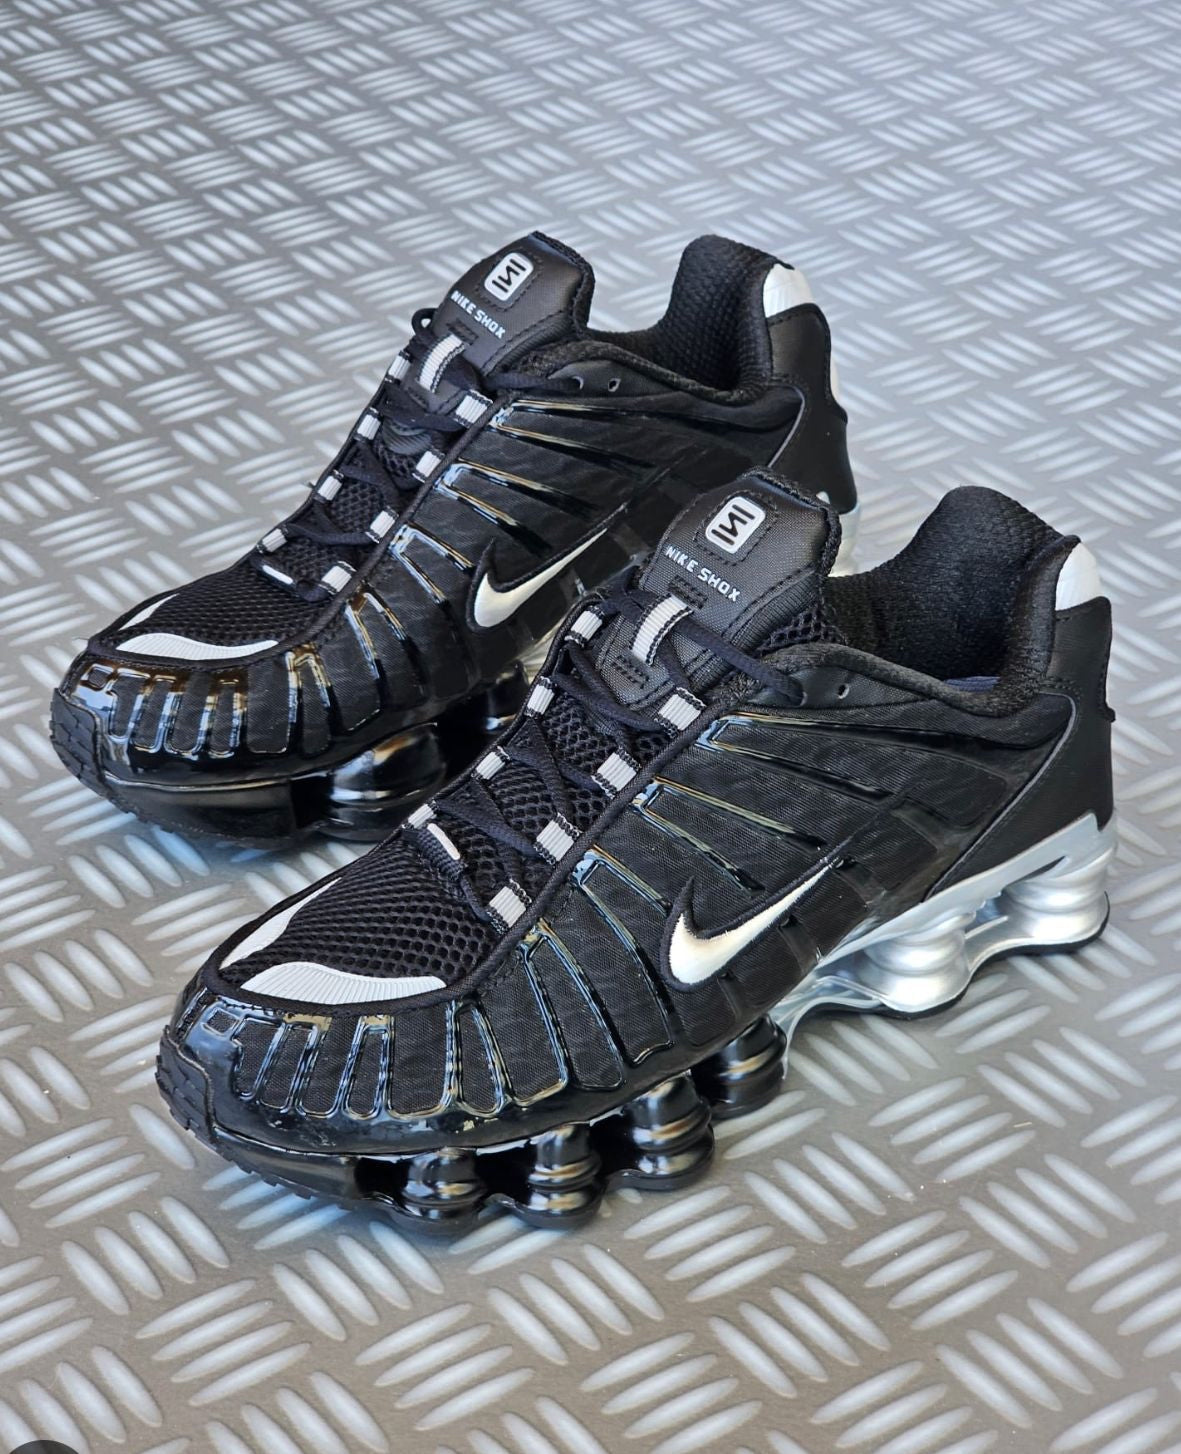 Nike Shox “Negras y gris”